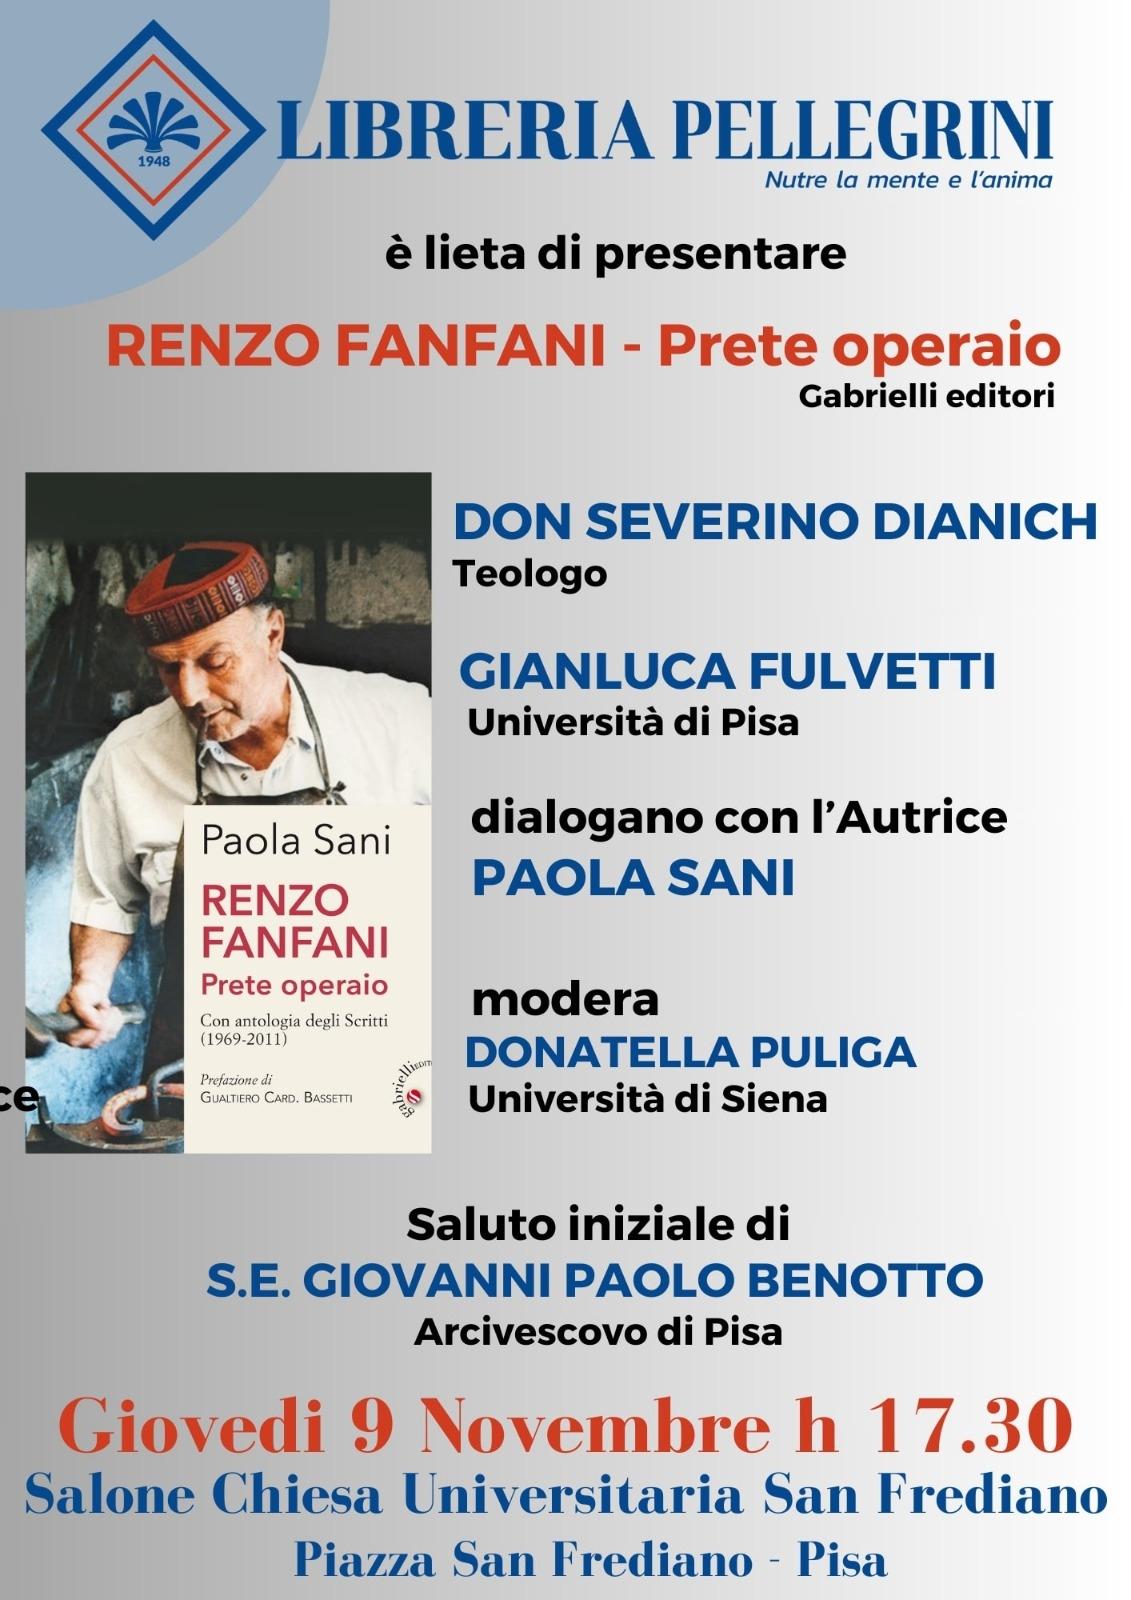 Renzo Fanfani, prete operaio, presentazione libro il 9 novembre